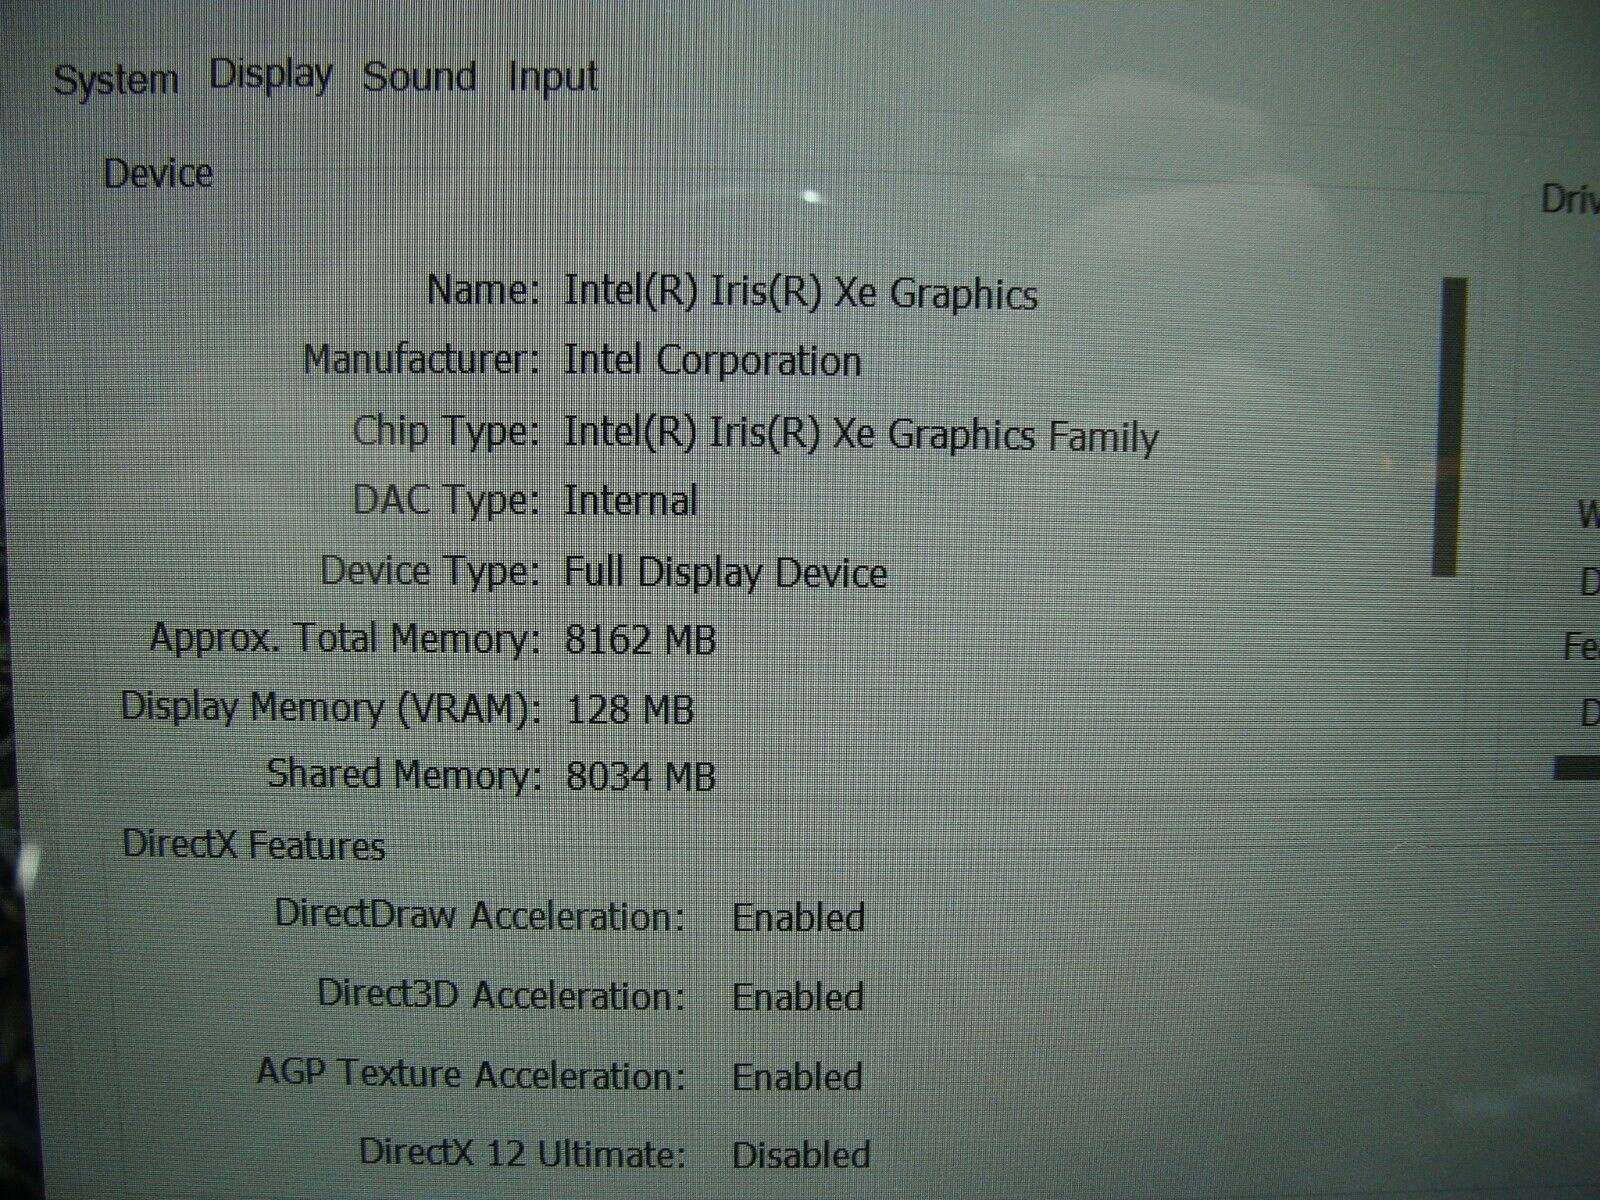 Dell Inspiron 14 7420 2-in-1 14FHD+ TOUCH Intel i7-1255U 1.7GHz 16GB 512GB SSD